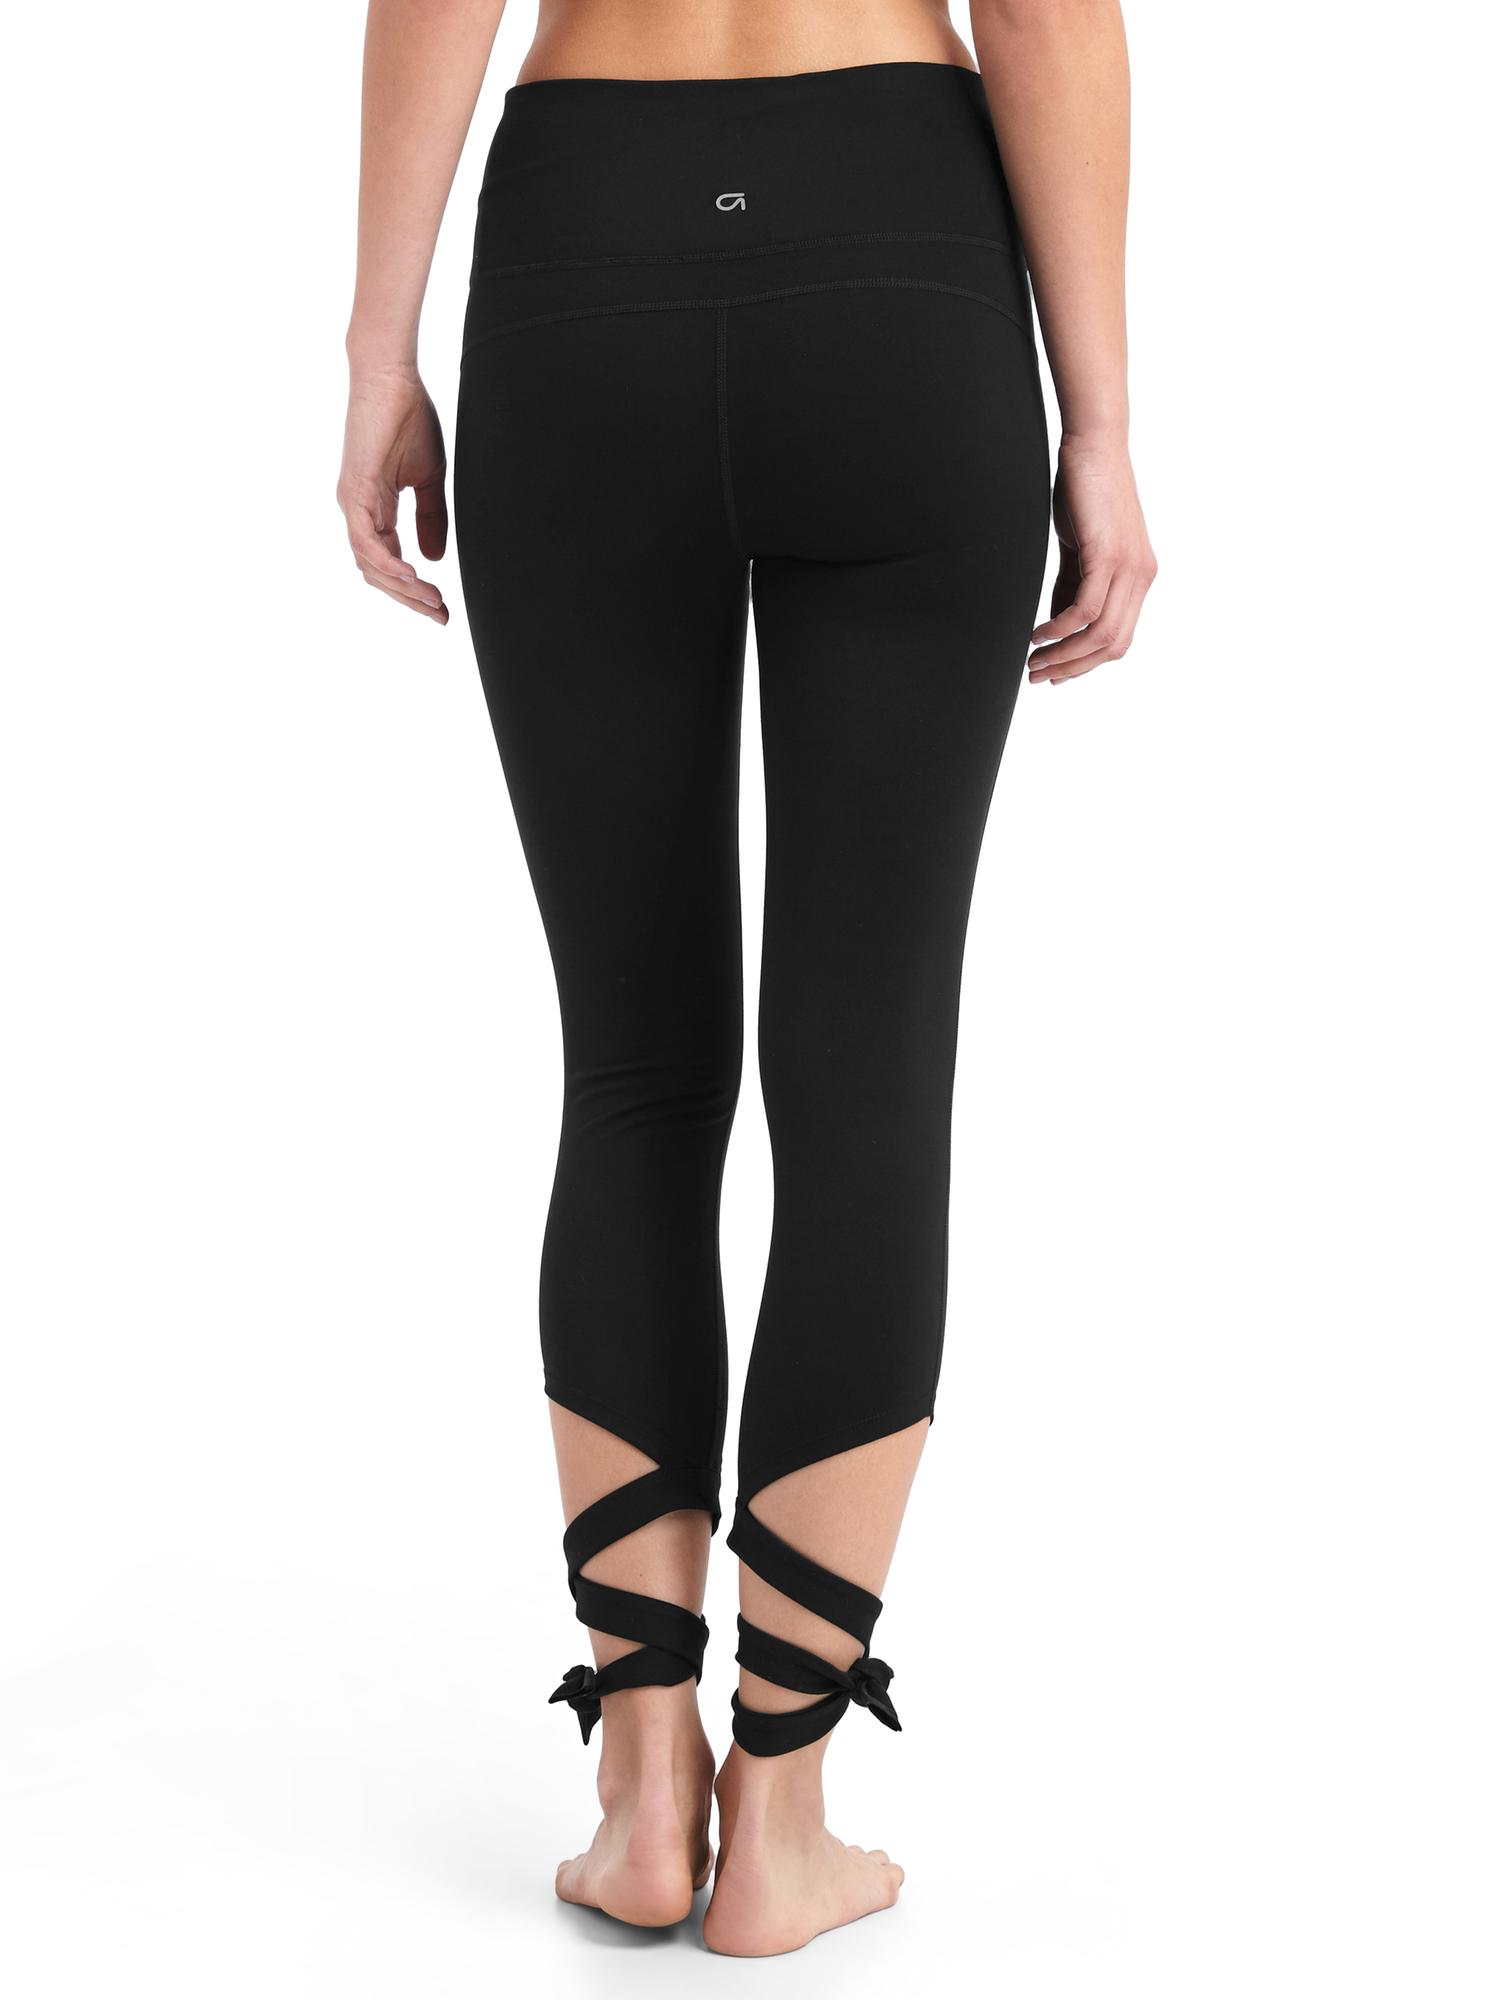 Gap Fit Blackout Leggings Womens Size S 4/27 6/28 Black Yoga Pants Ombre